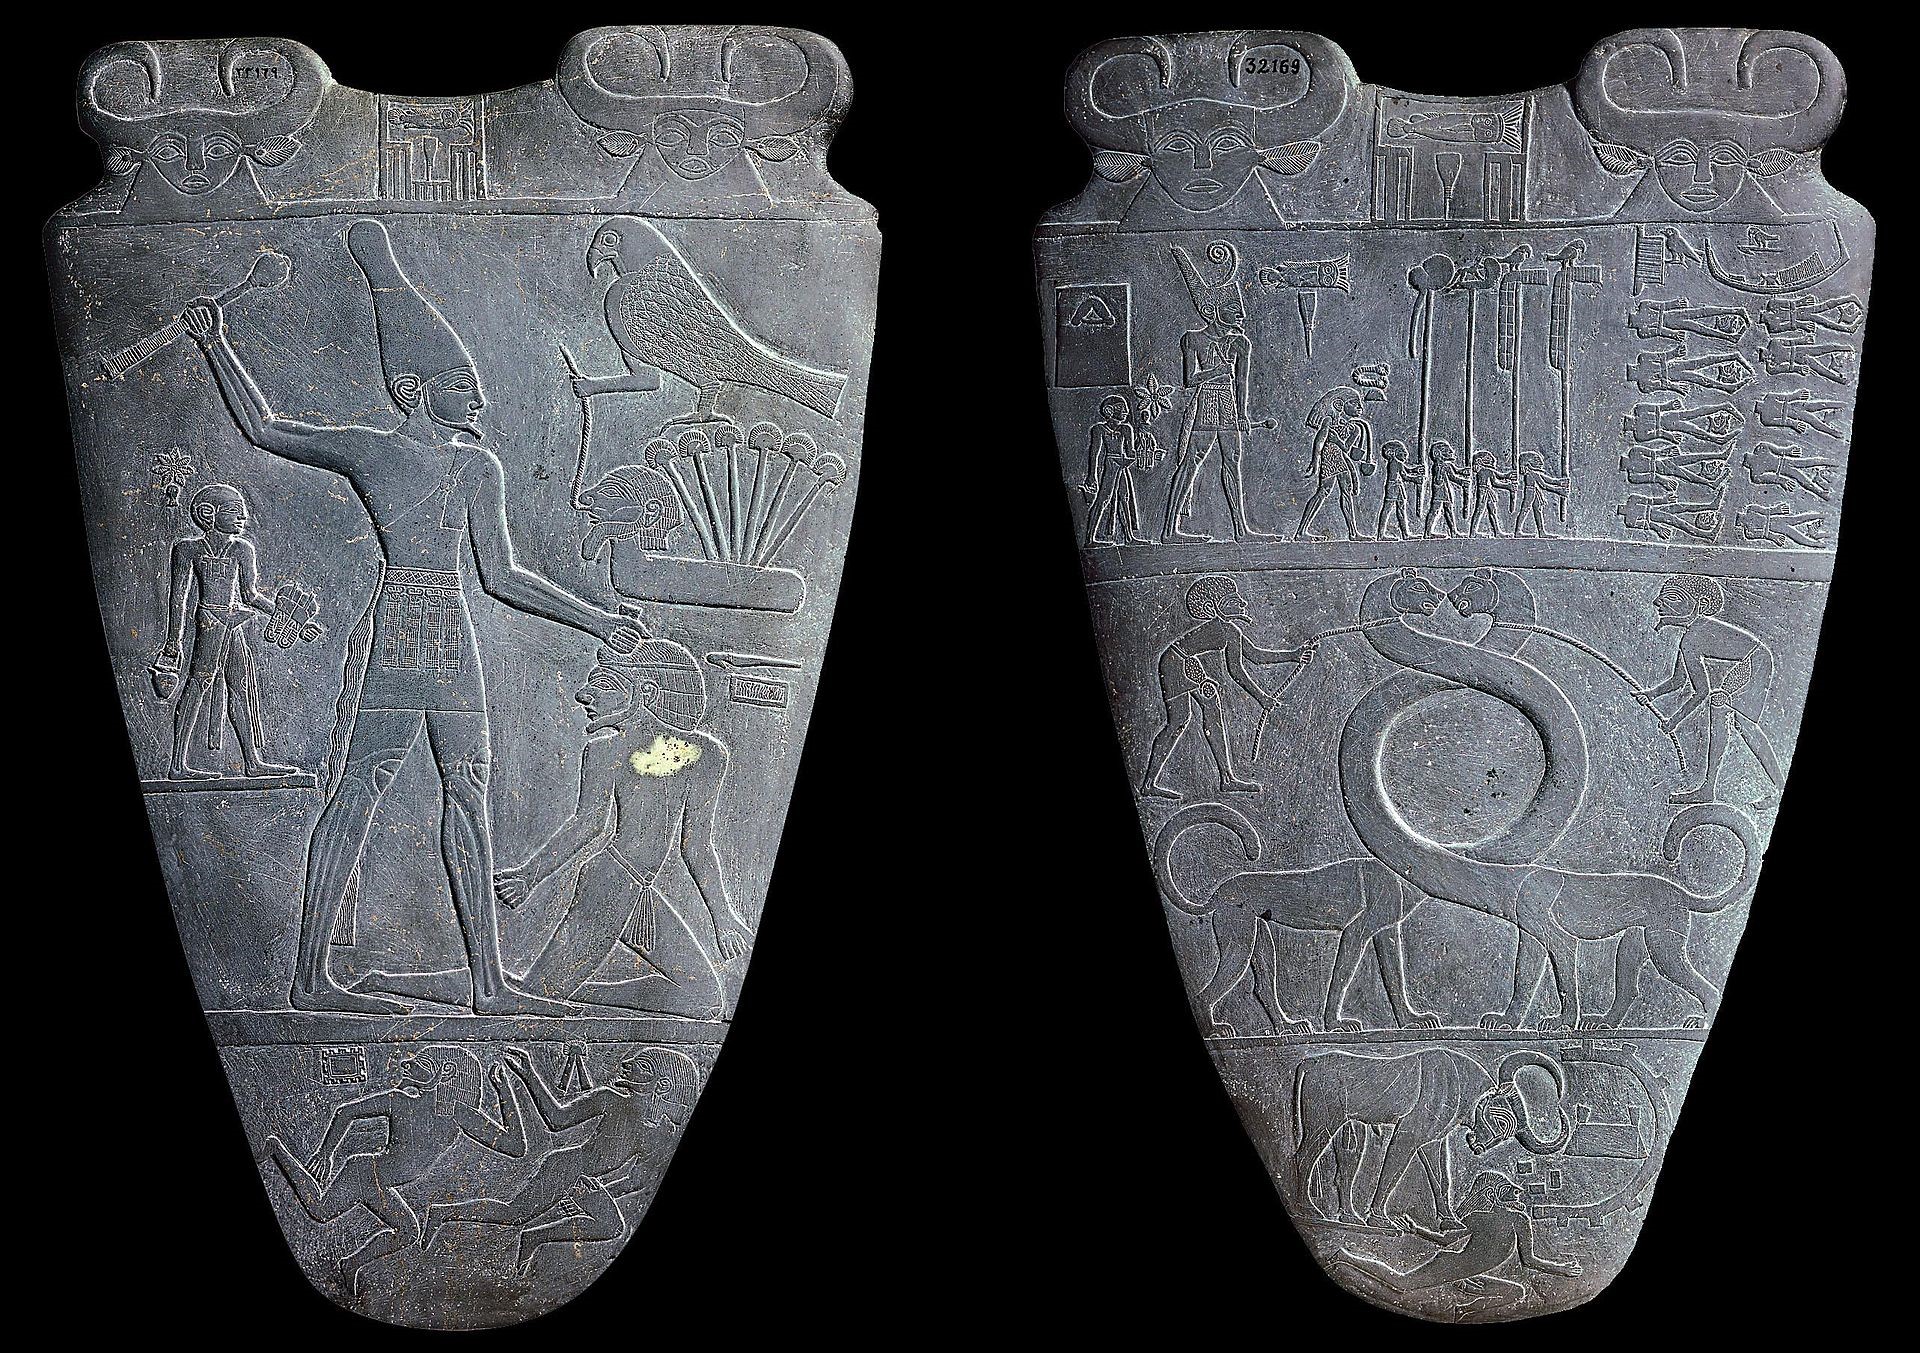  纳尔迈·帕莱特(Narmer Palette)提供了历史上已知的最早的国王描绘 之一，其展示着纳尔迈戴着上埃及的王冠，迫使下埃及人向他投降，手 里拿着狼牙棒的画面。早期王朝的国王并没有简单地继承现成的国家; 他们不得不通过武力结成一体。//图片来源：公共领域